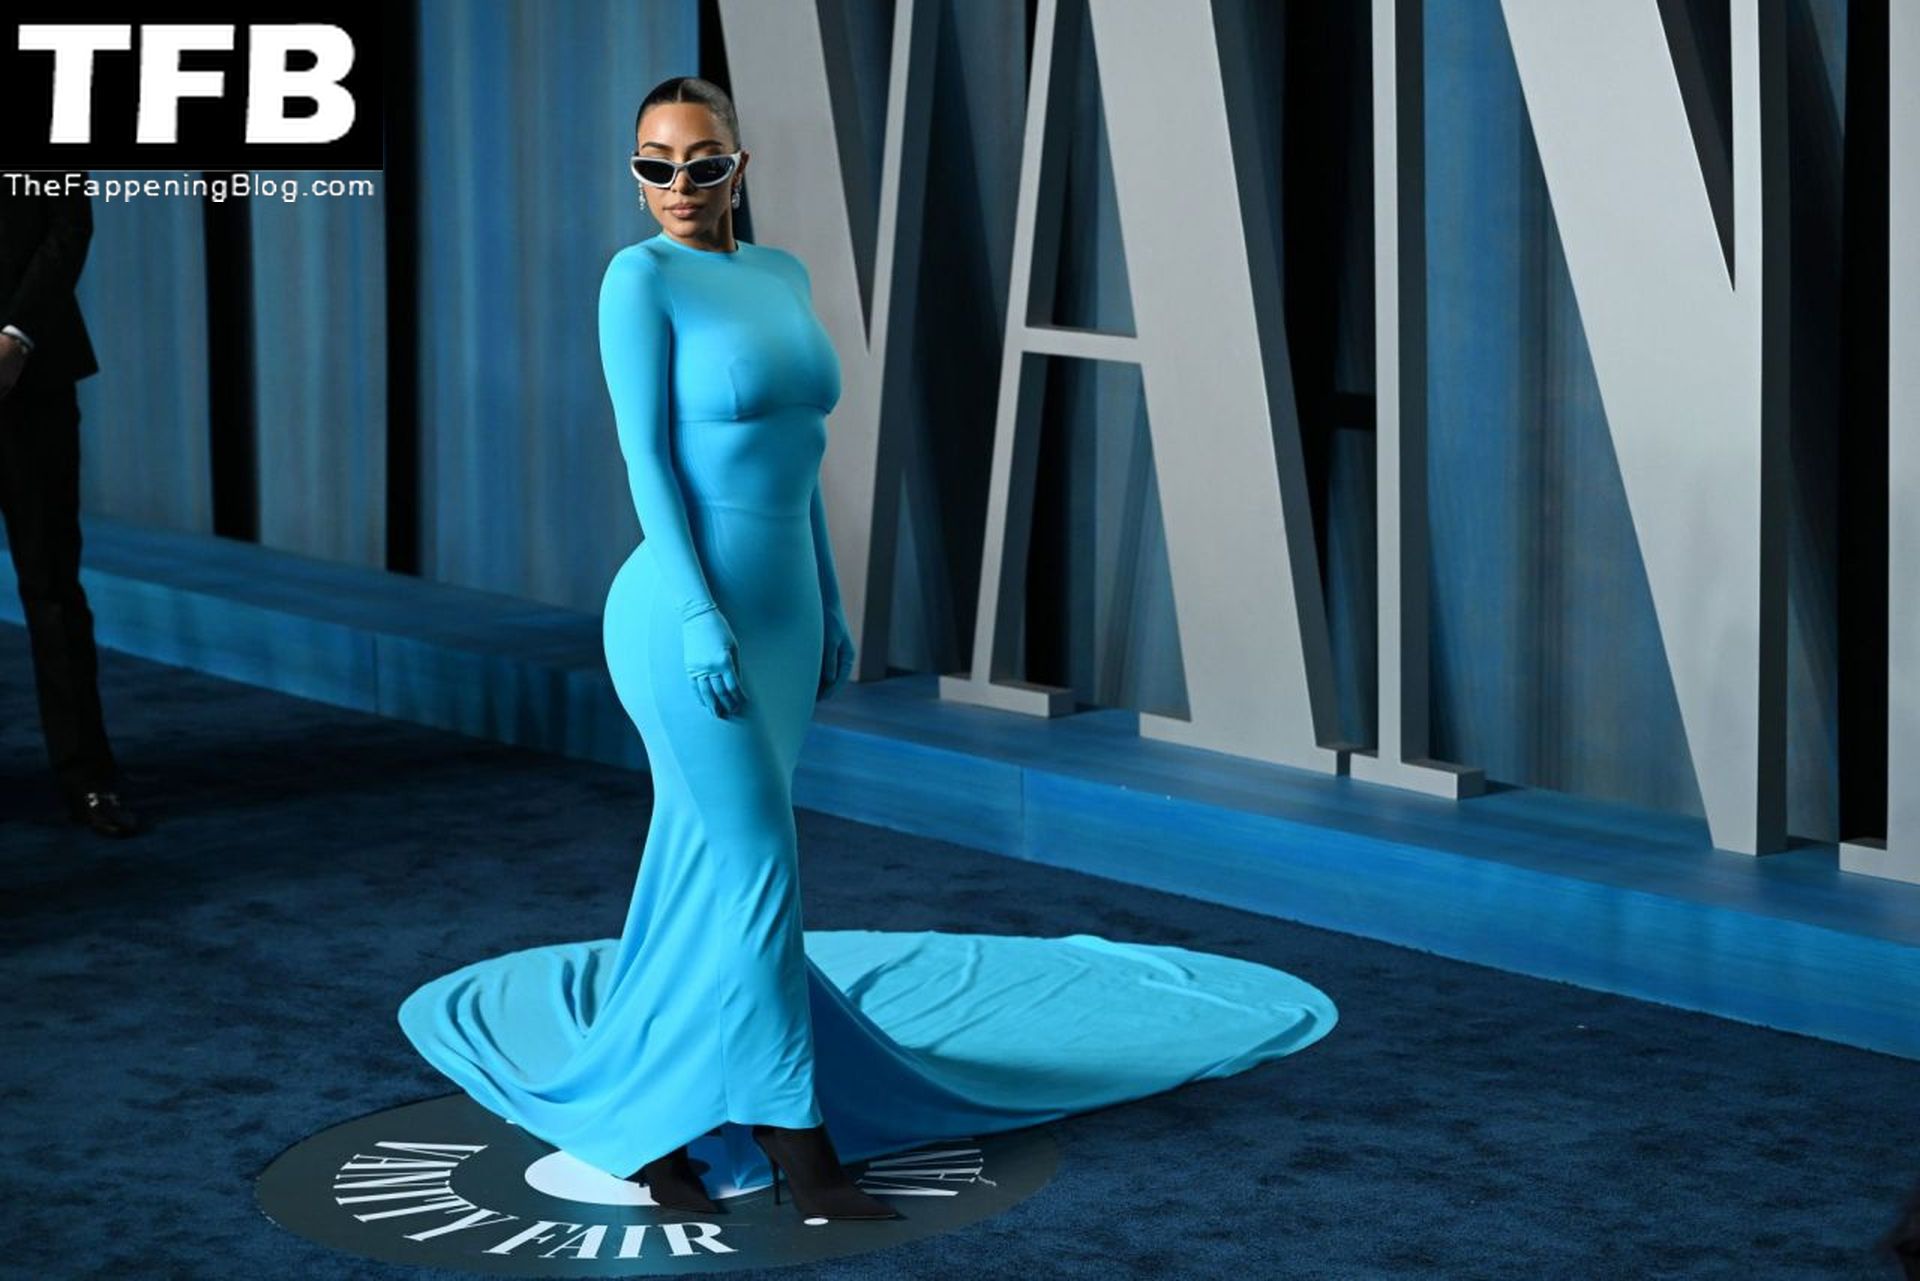 Kim-Kardashian-Sexy-The-Fappening-Blog-2-1.jpg